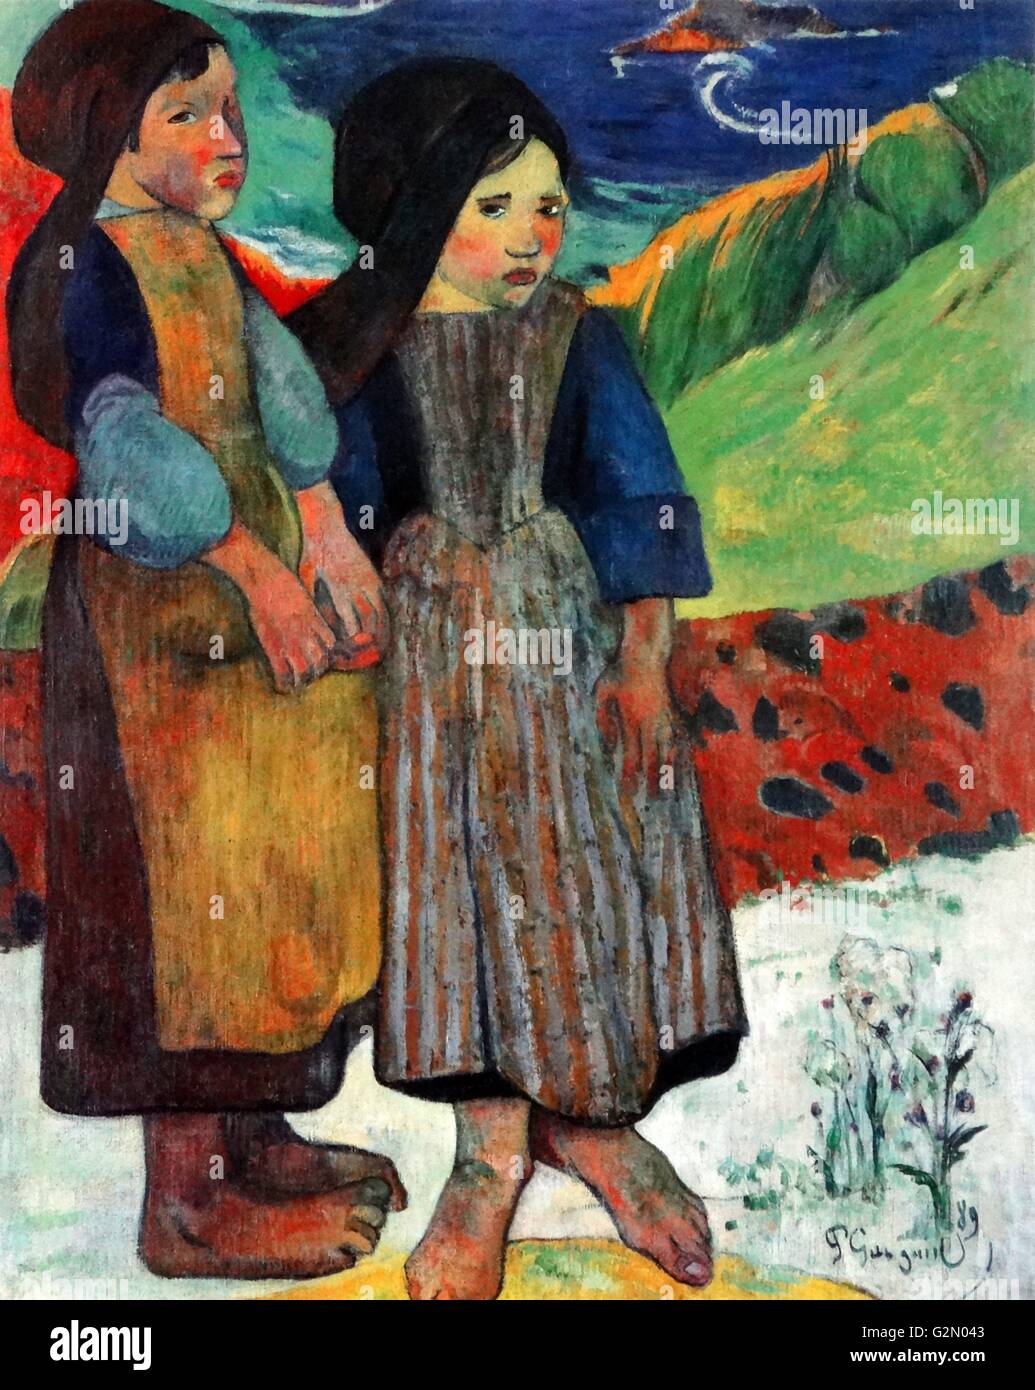 Olio su tela del pittore francese Paul Gauguin (7 giugno 1848 - 8 Maggio 1903) lavoro intitolato "due ragazze bretone dal mare". Completata nel 1889. Foto Stock